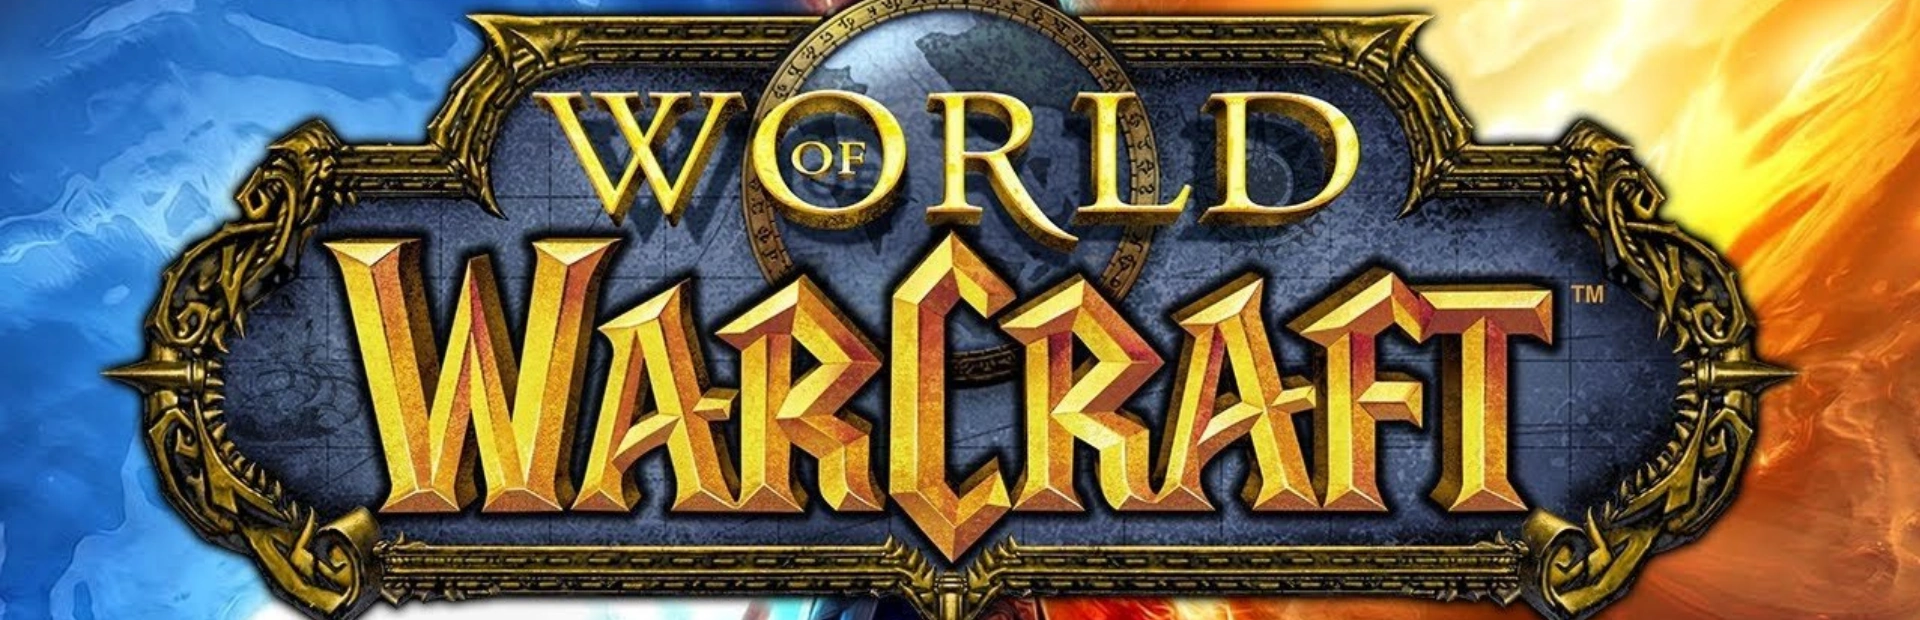 world of warcraft.banner2